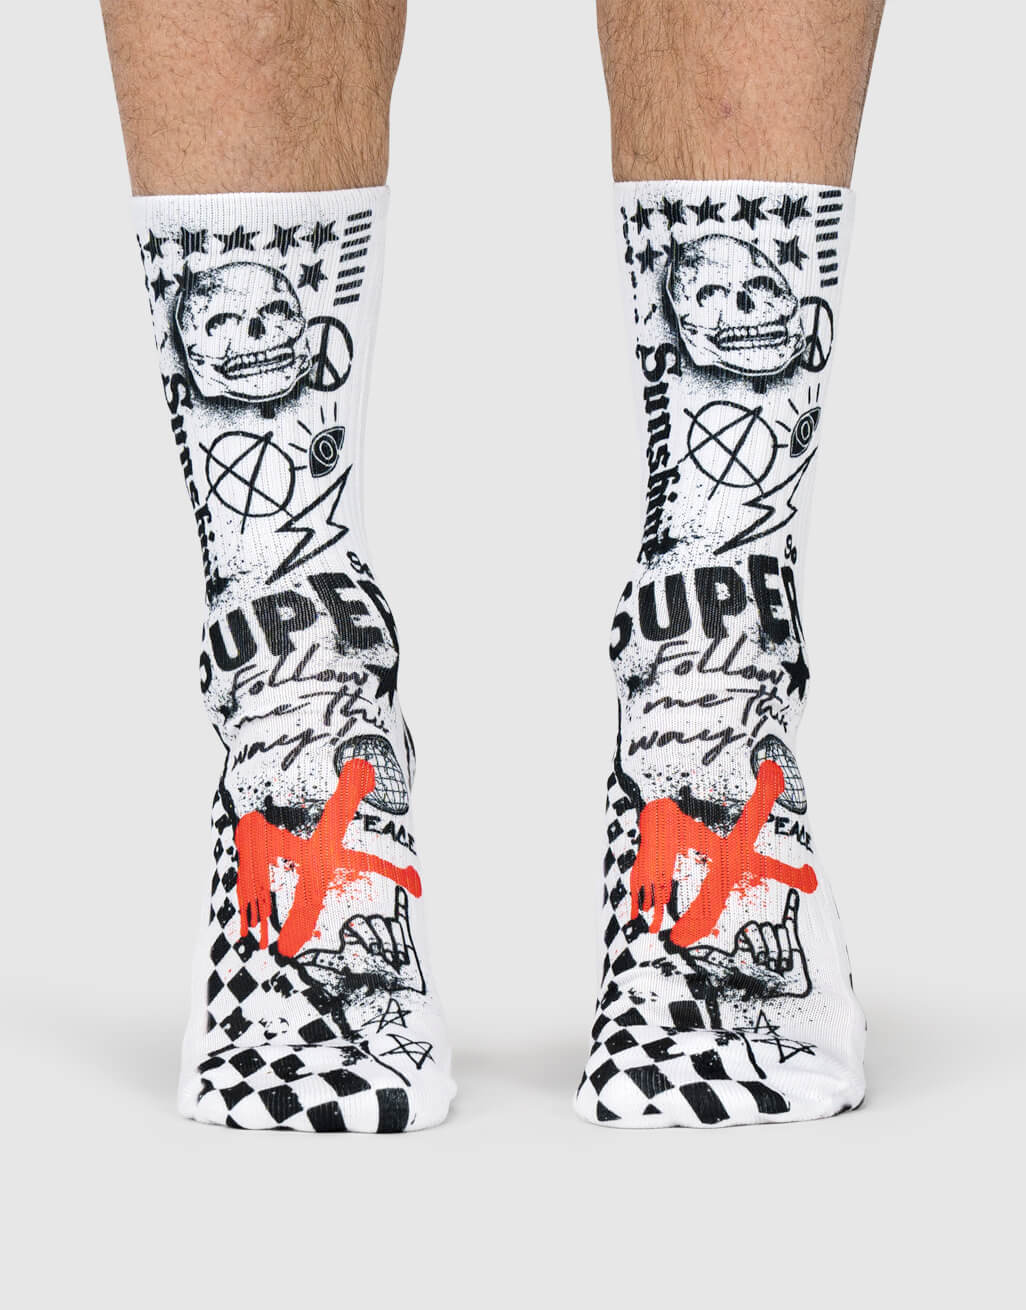 x-graffiti-socks